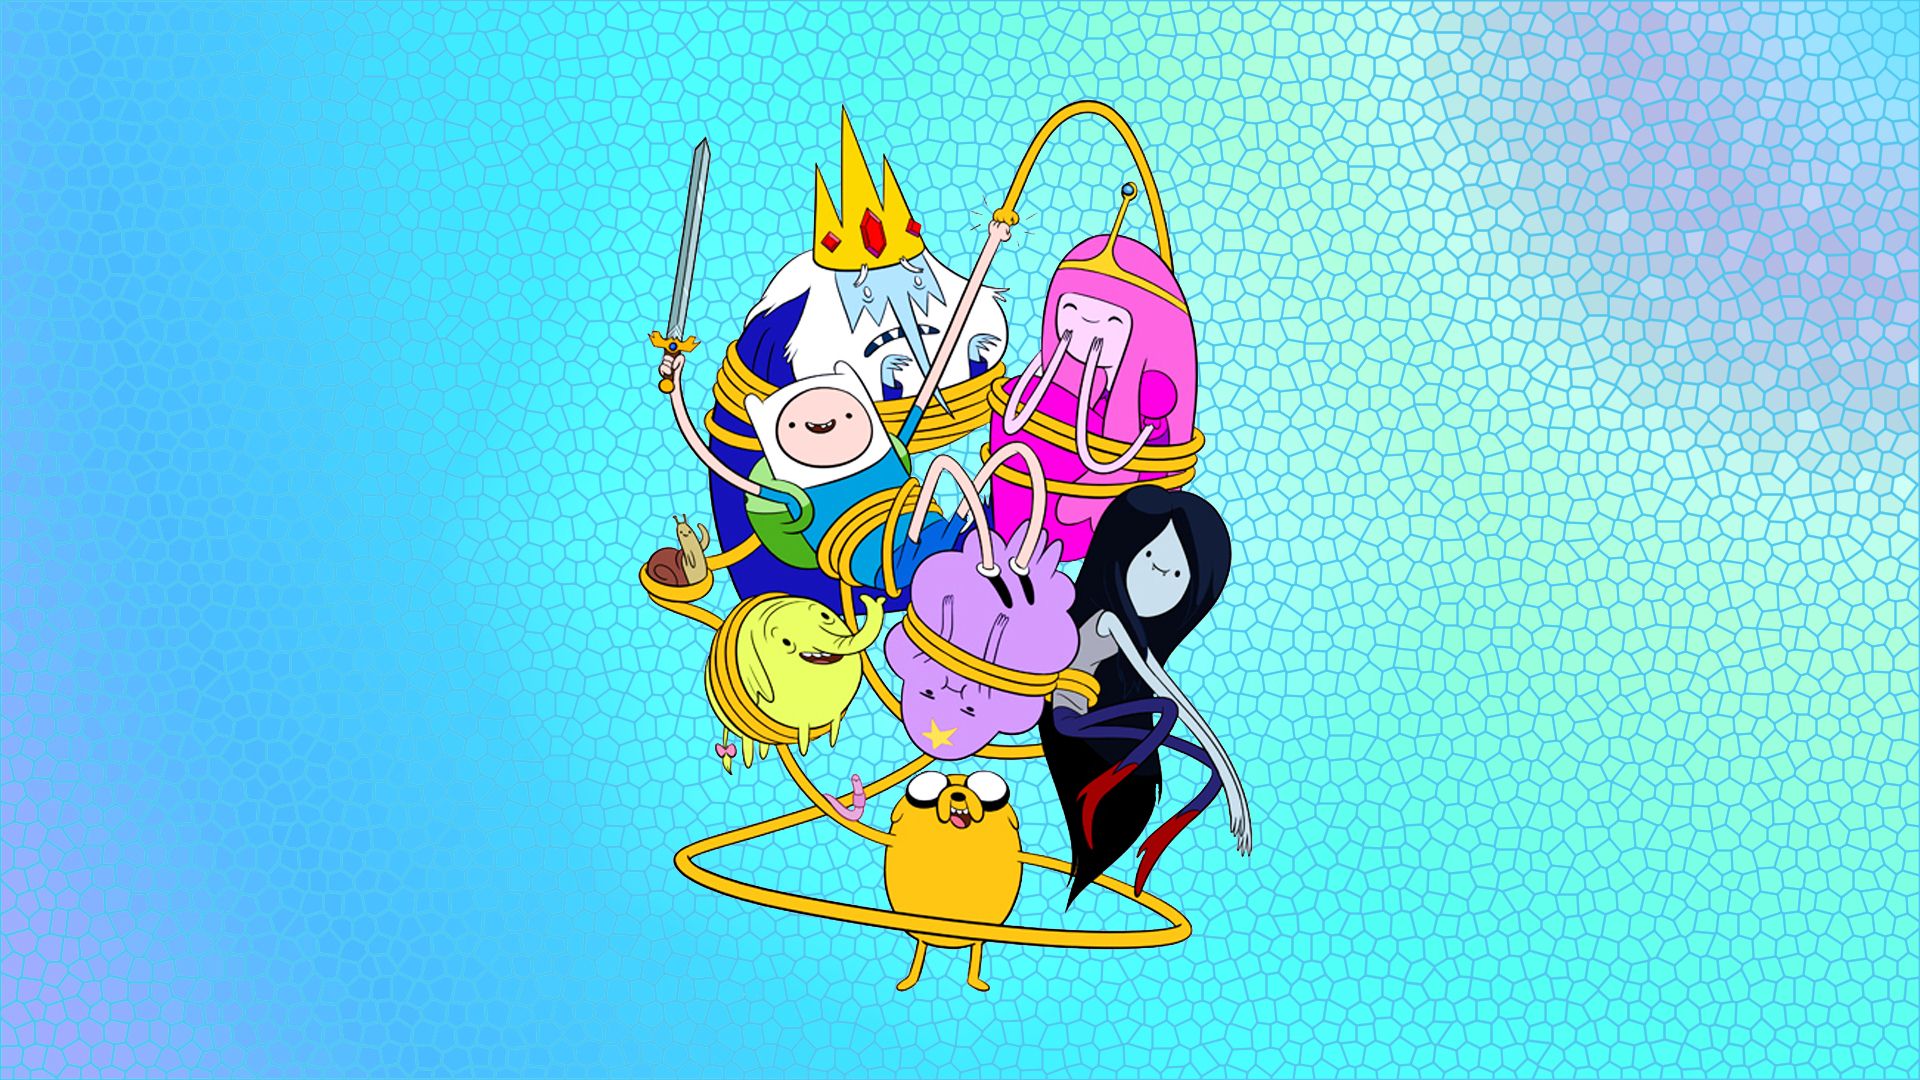 76+] Adventure Time Wallpapers Hd - WallpaperSafari